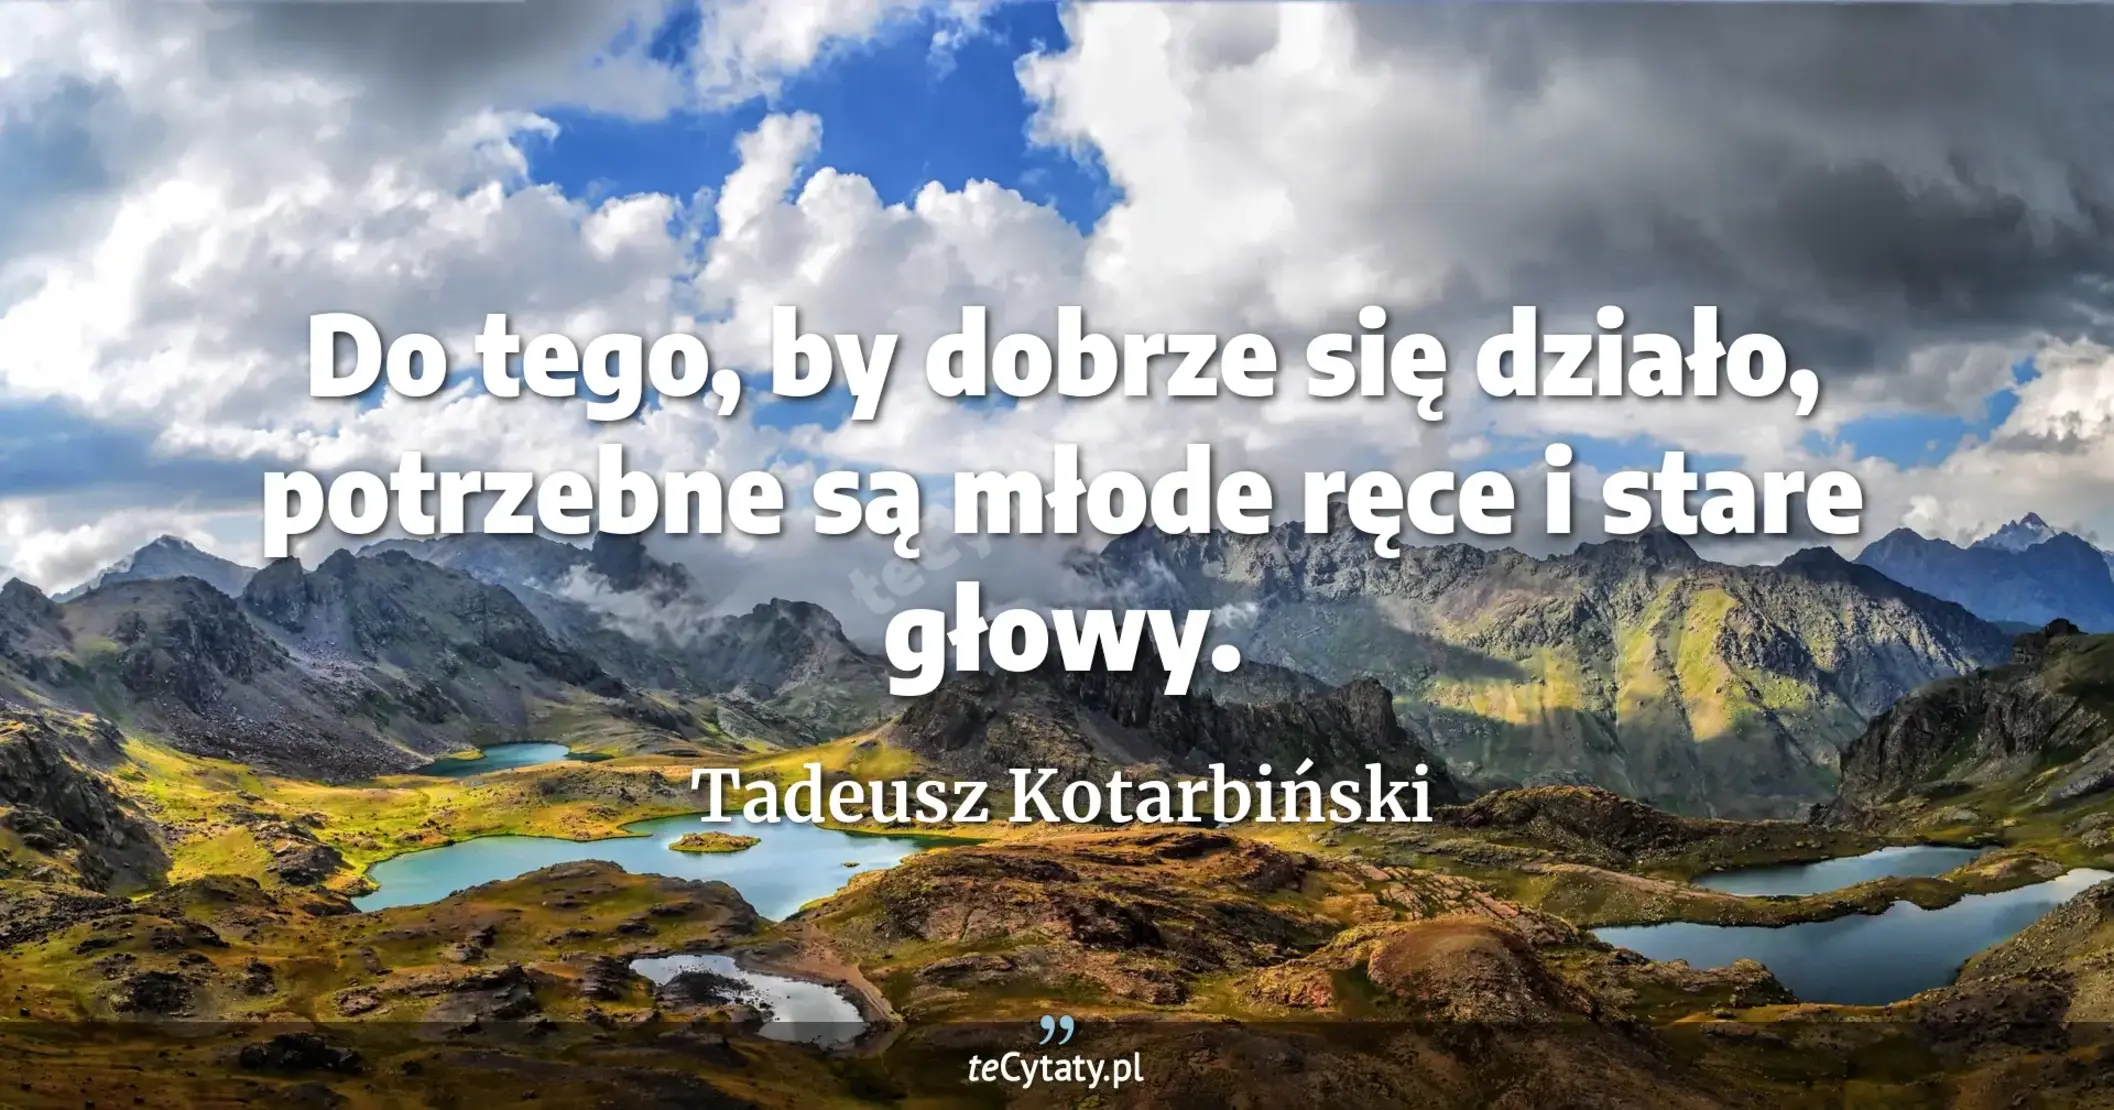 Do tego, by dobrze się działo, potrzebne są młode ręce i stare głowy. - Tadeusz Kotarbiński